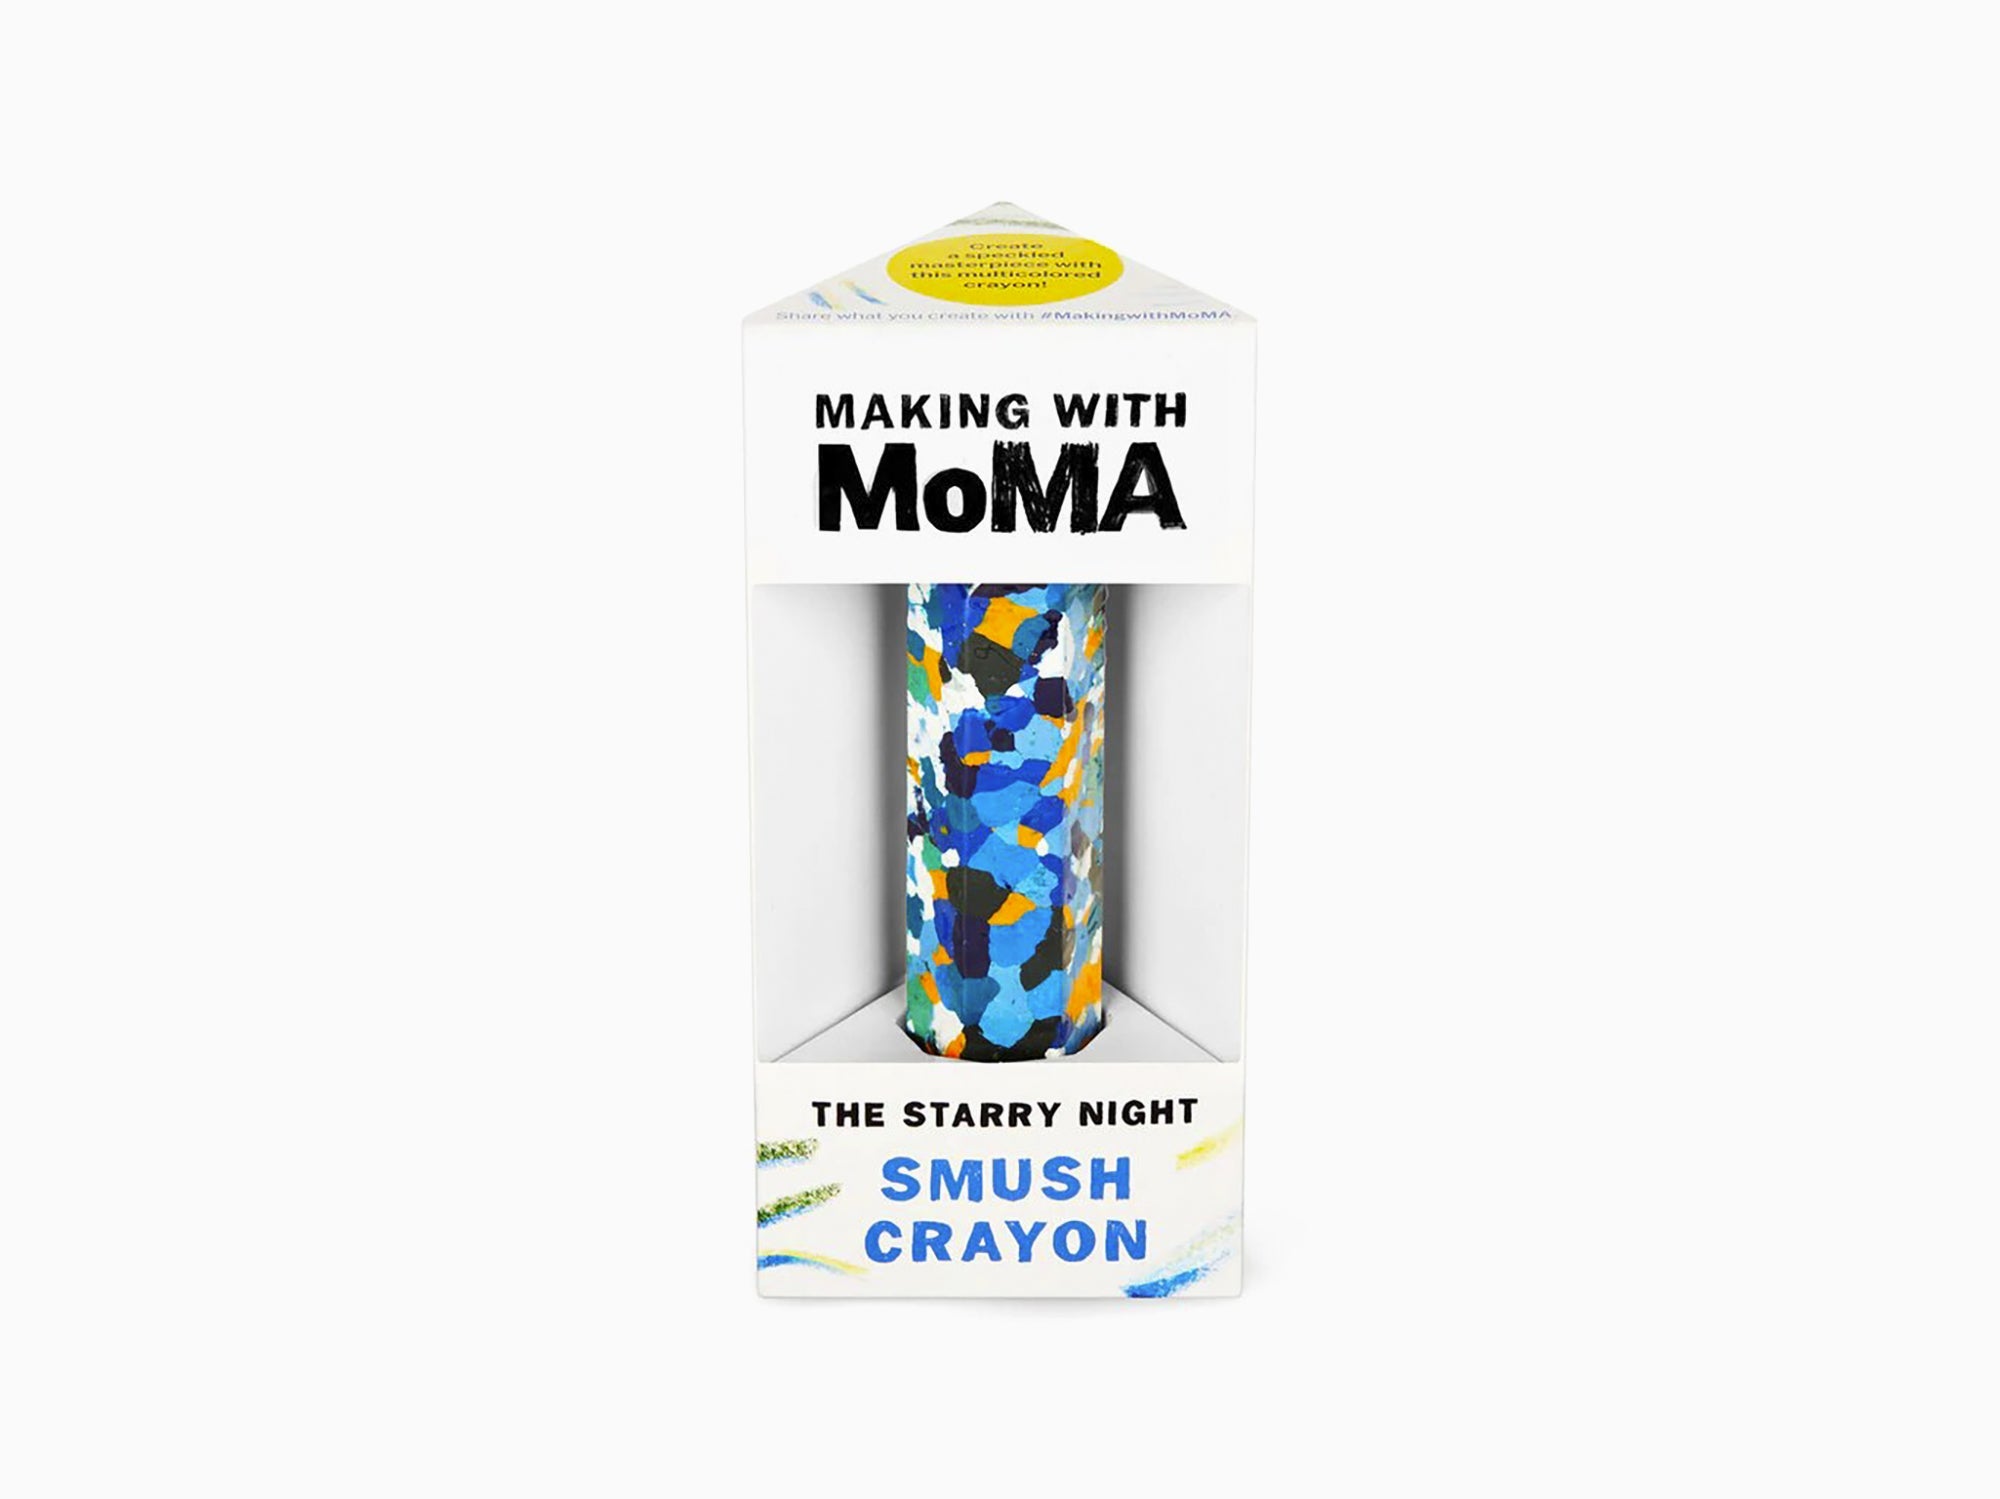 Moma Crayon Smush Jumbo – abnormal concept